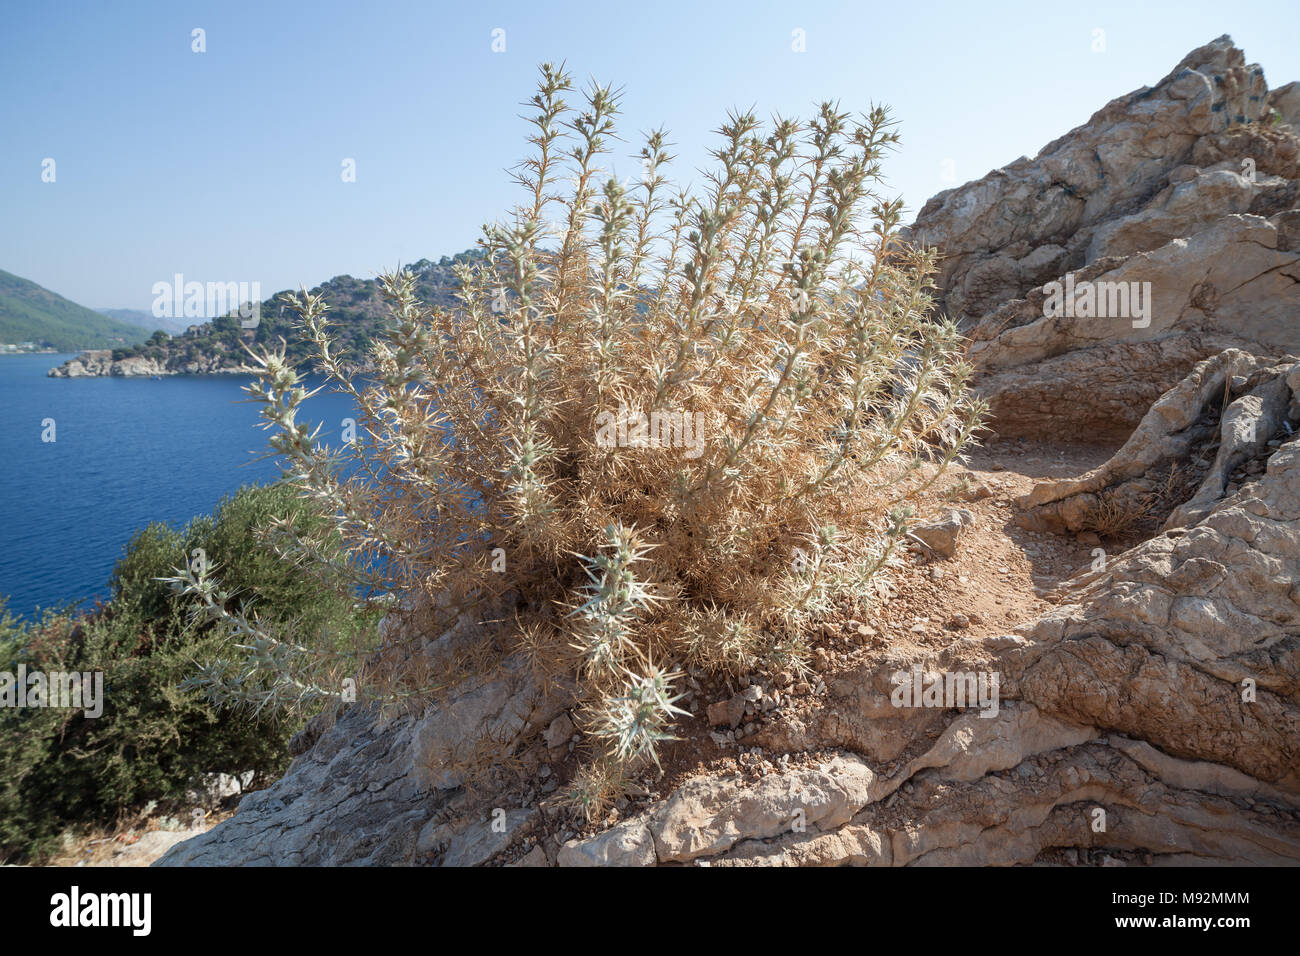 Die Stachelige Pflanze an den Ufern des Mittelmeers Stockfoto